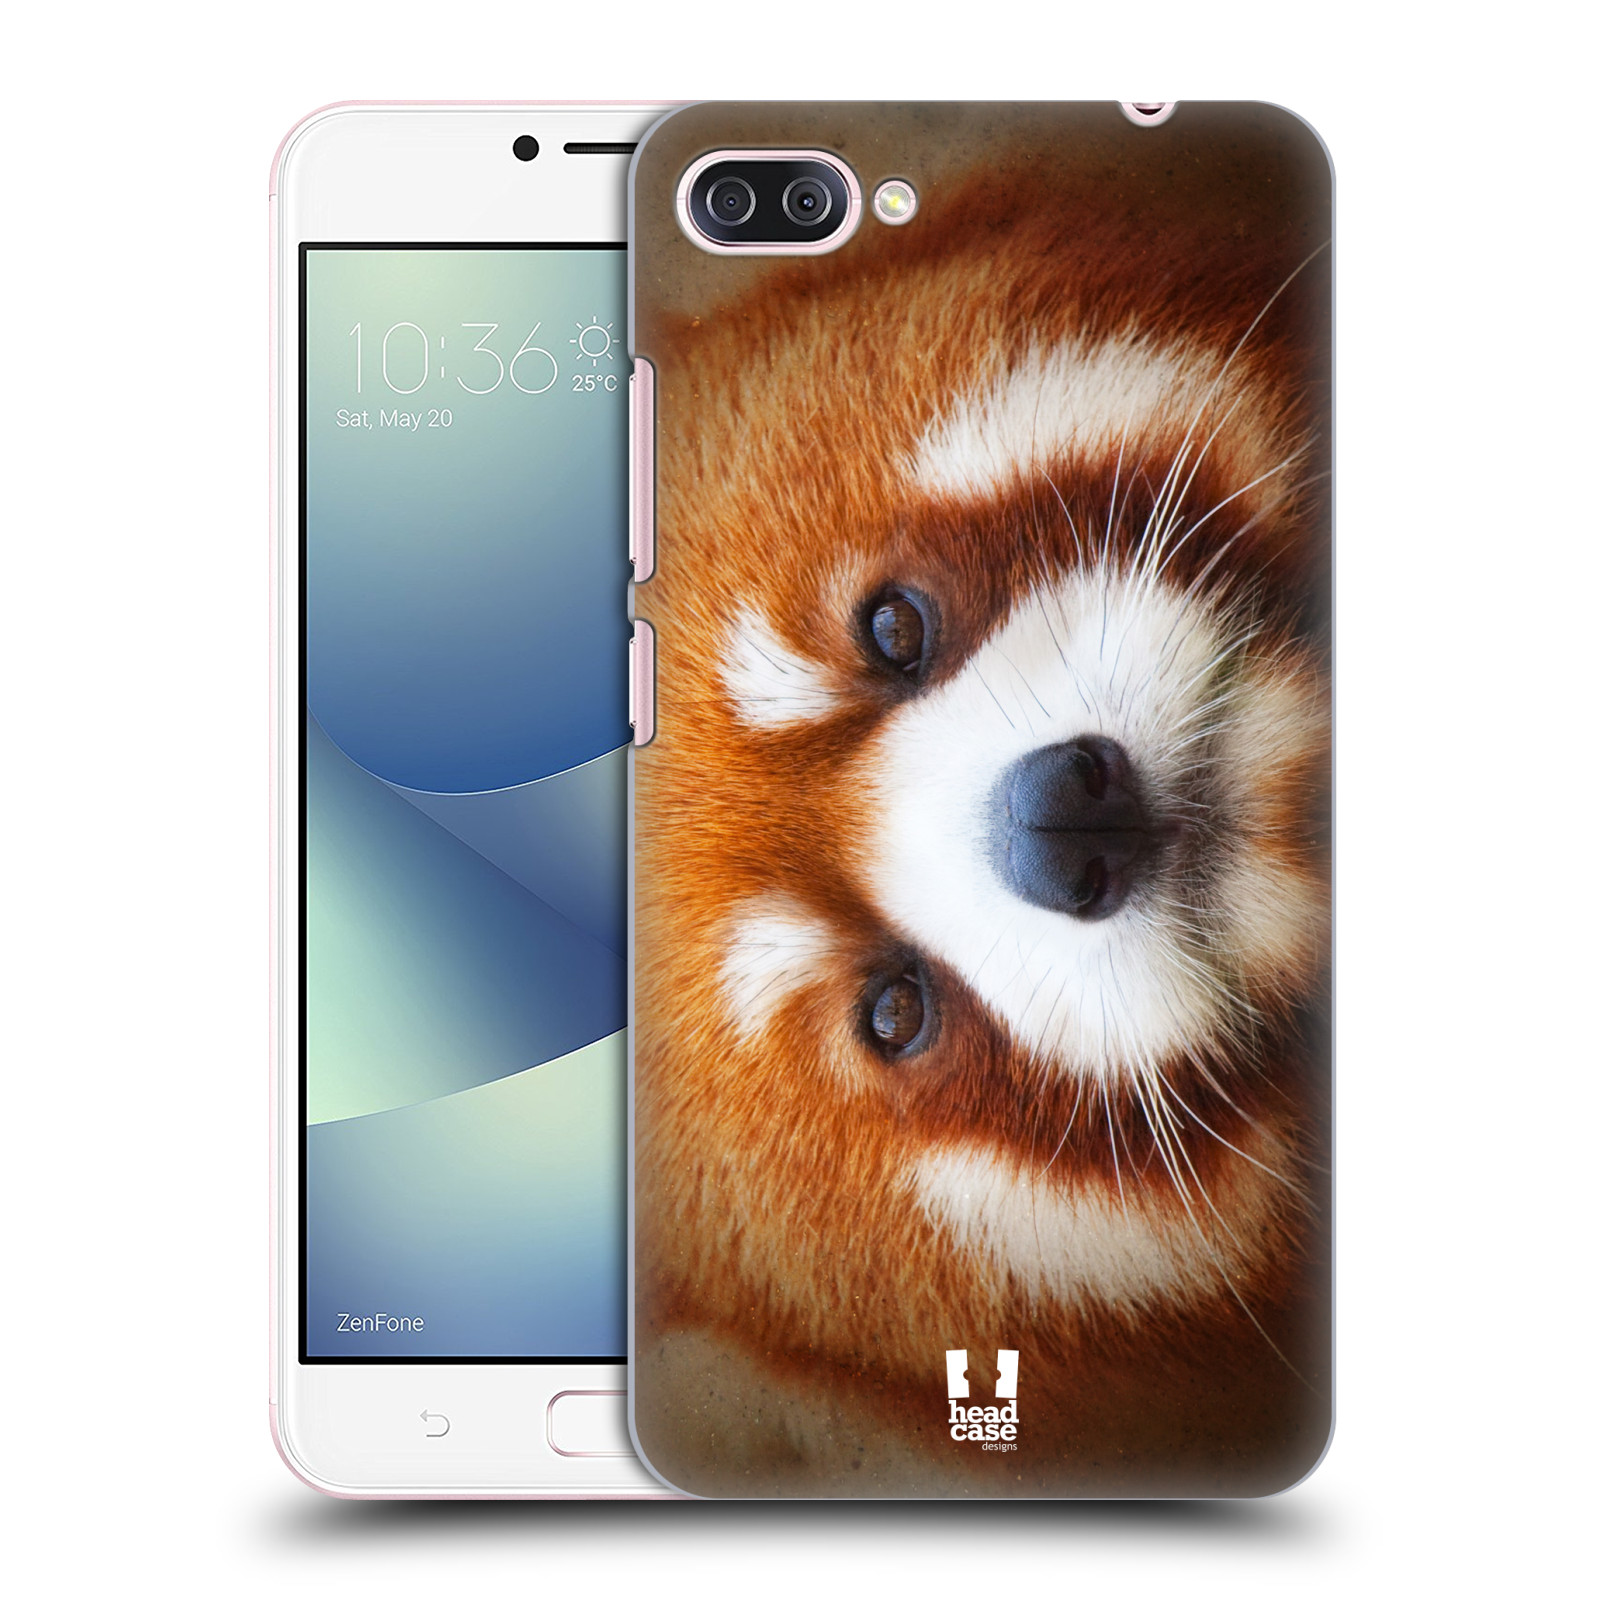 HEAD CASE plastový obal na mobil Asus Zenfone 4 MAX ZC554KL vzor Zvířecí tváře 2 medvěd panda rudá